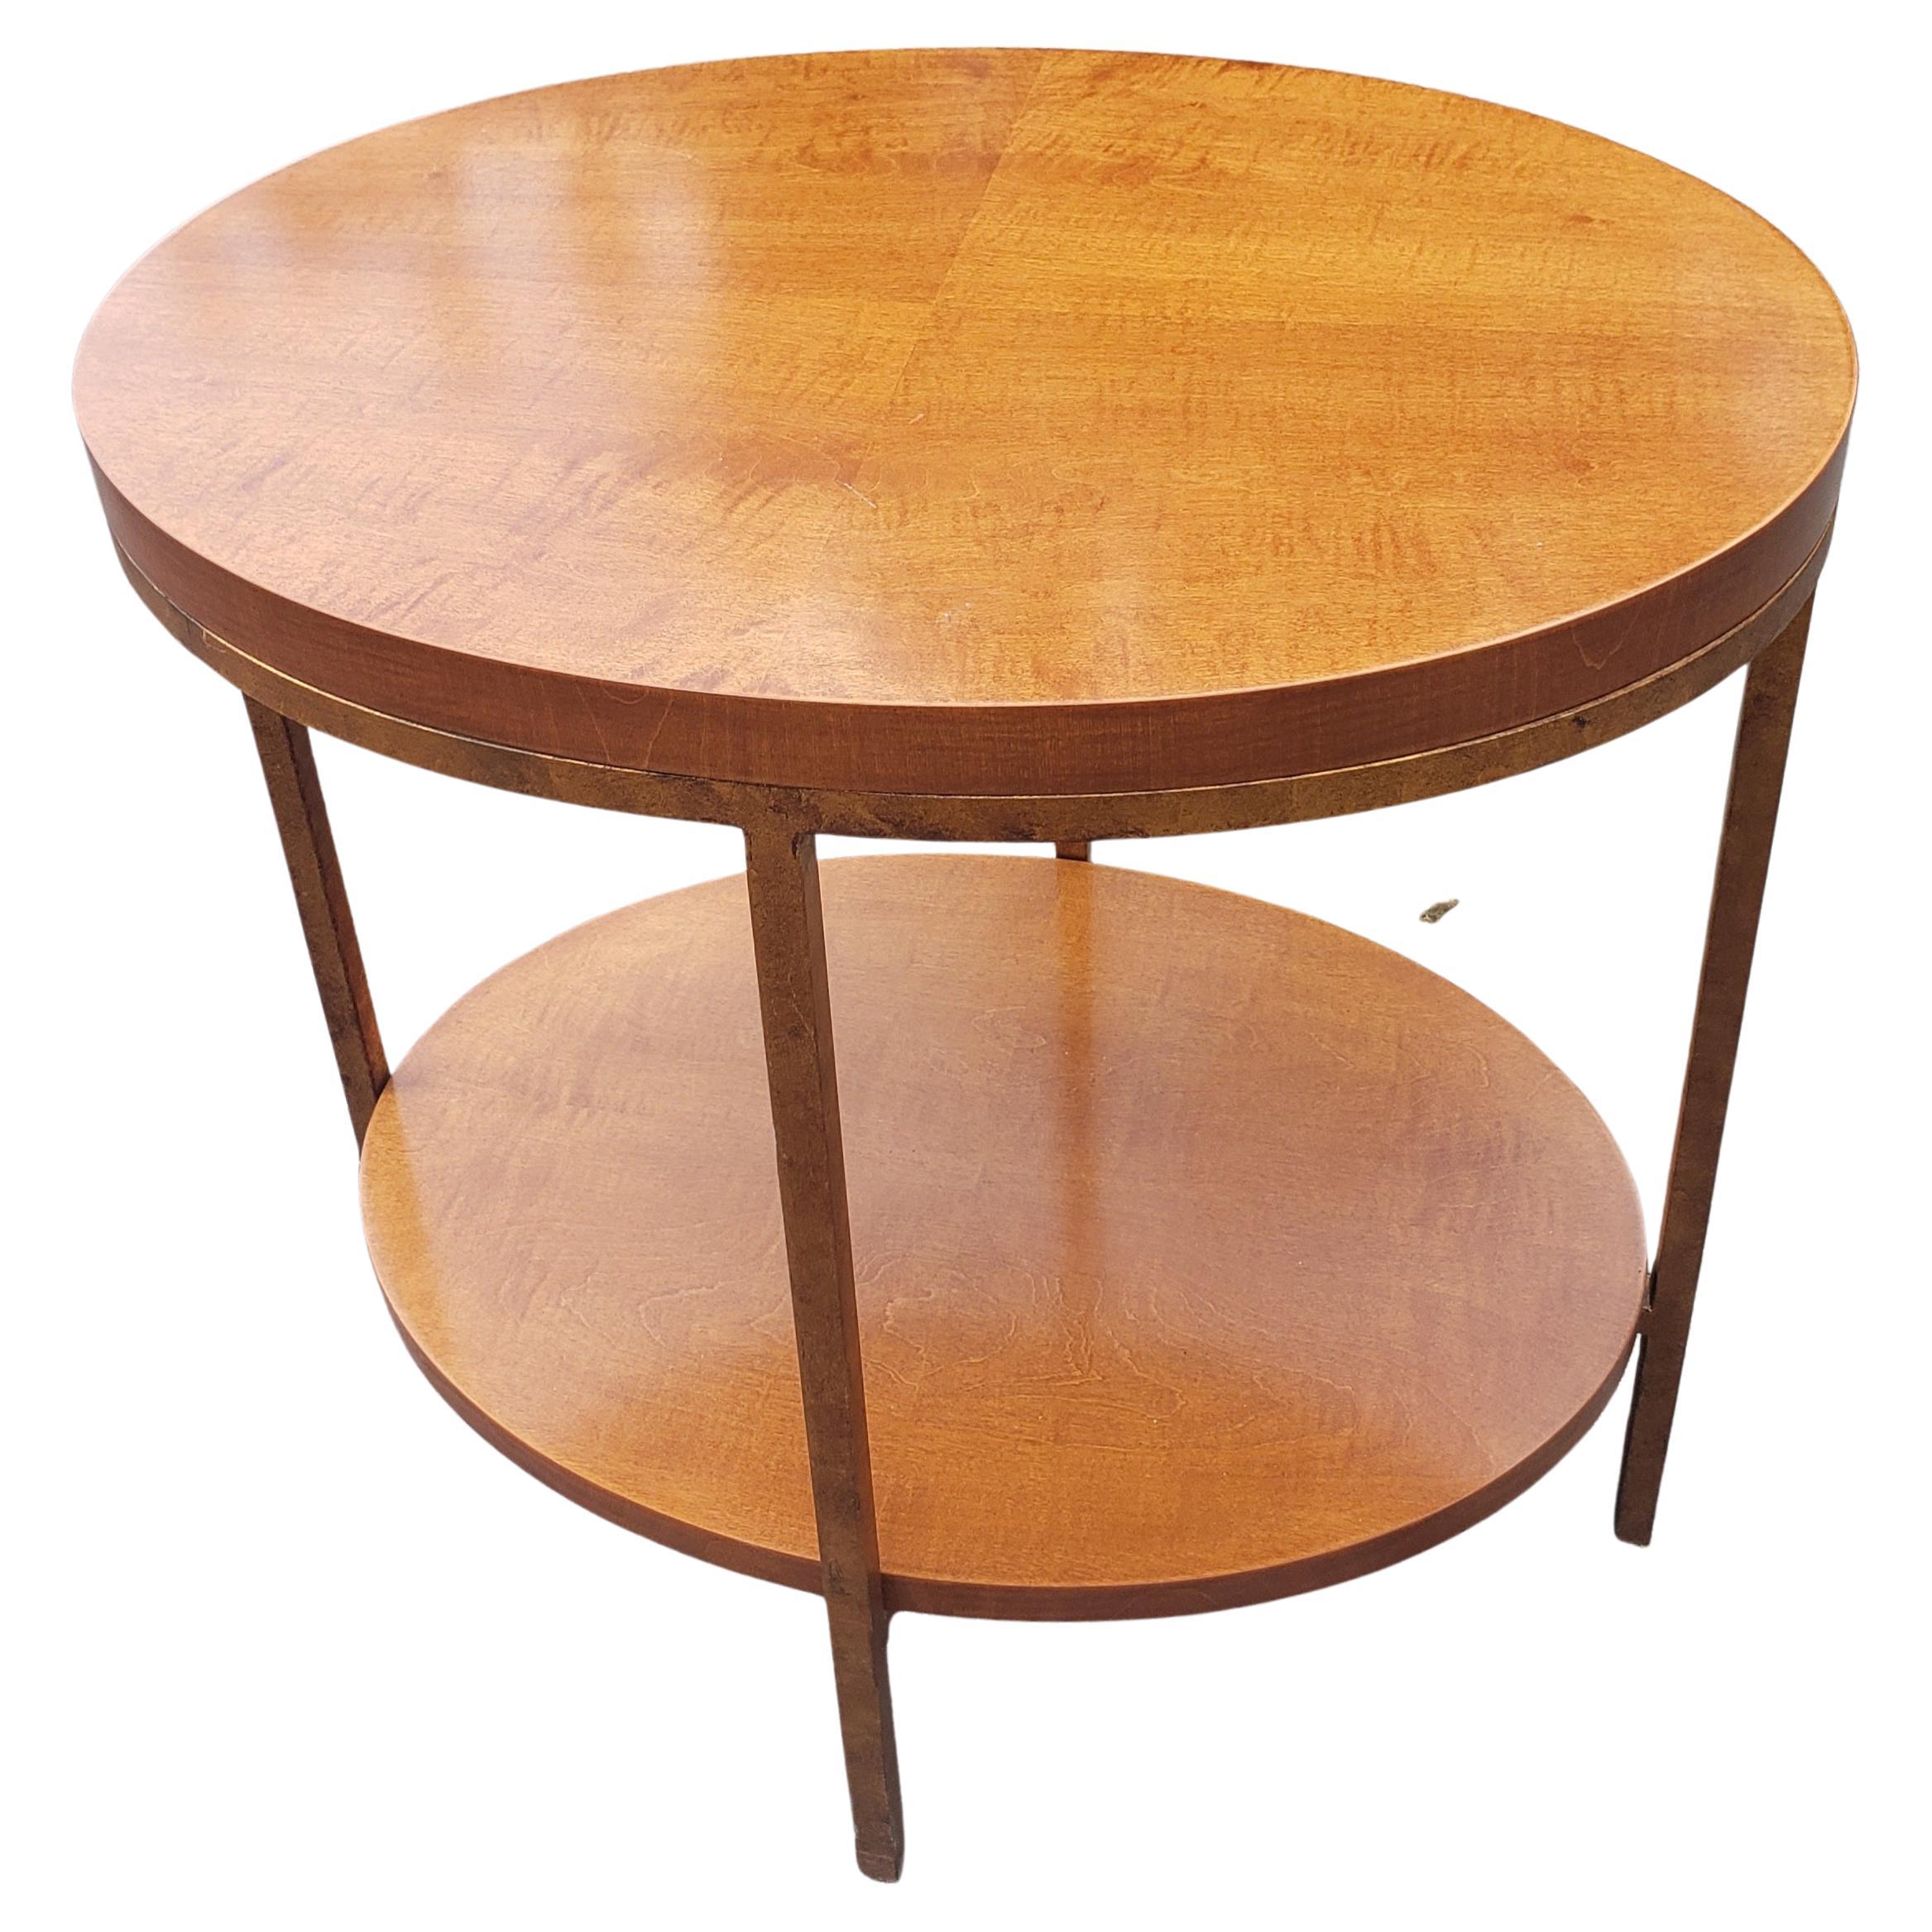 Ein stilvoller, moderner, zweistöckiger ovaler Tisch von Baker Furniture aus Primavera-Mahagoni (blondes Mahagoni) und vergoldetem Metallgestell. Der Tisch verfügt über ein extrem schweres, stabiles und wunderschönes mit
Buchgefertigte